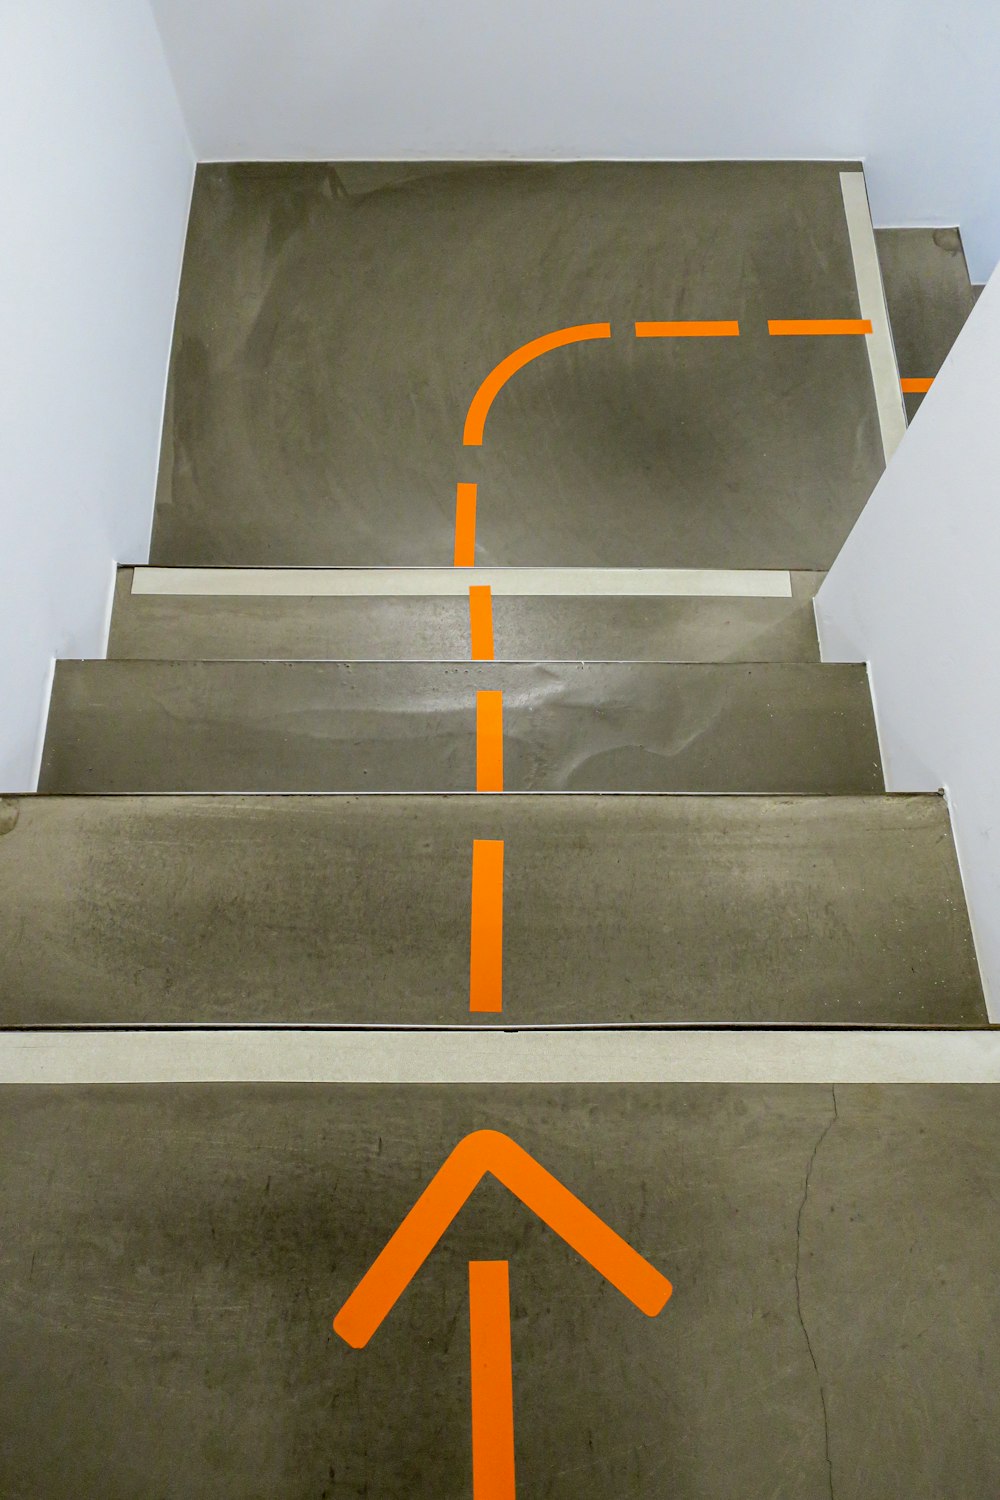 Escaleras de hormigón gris con señal de flecha amarilla